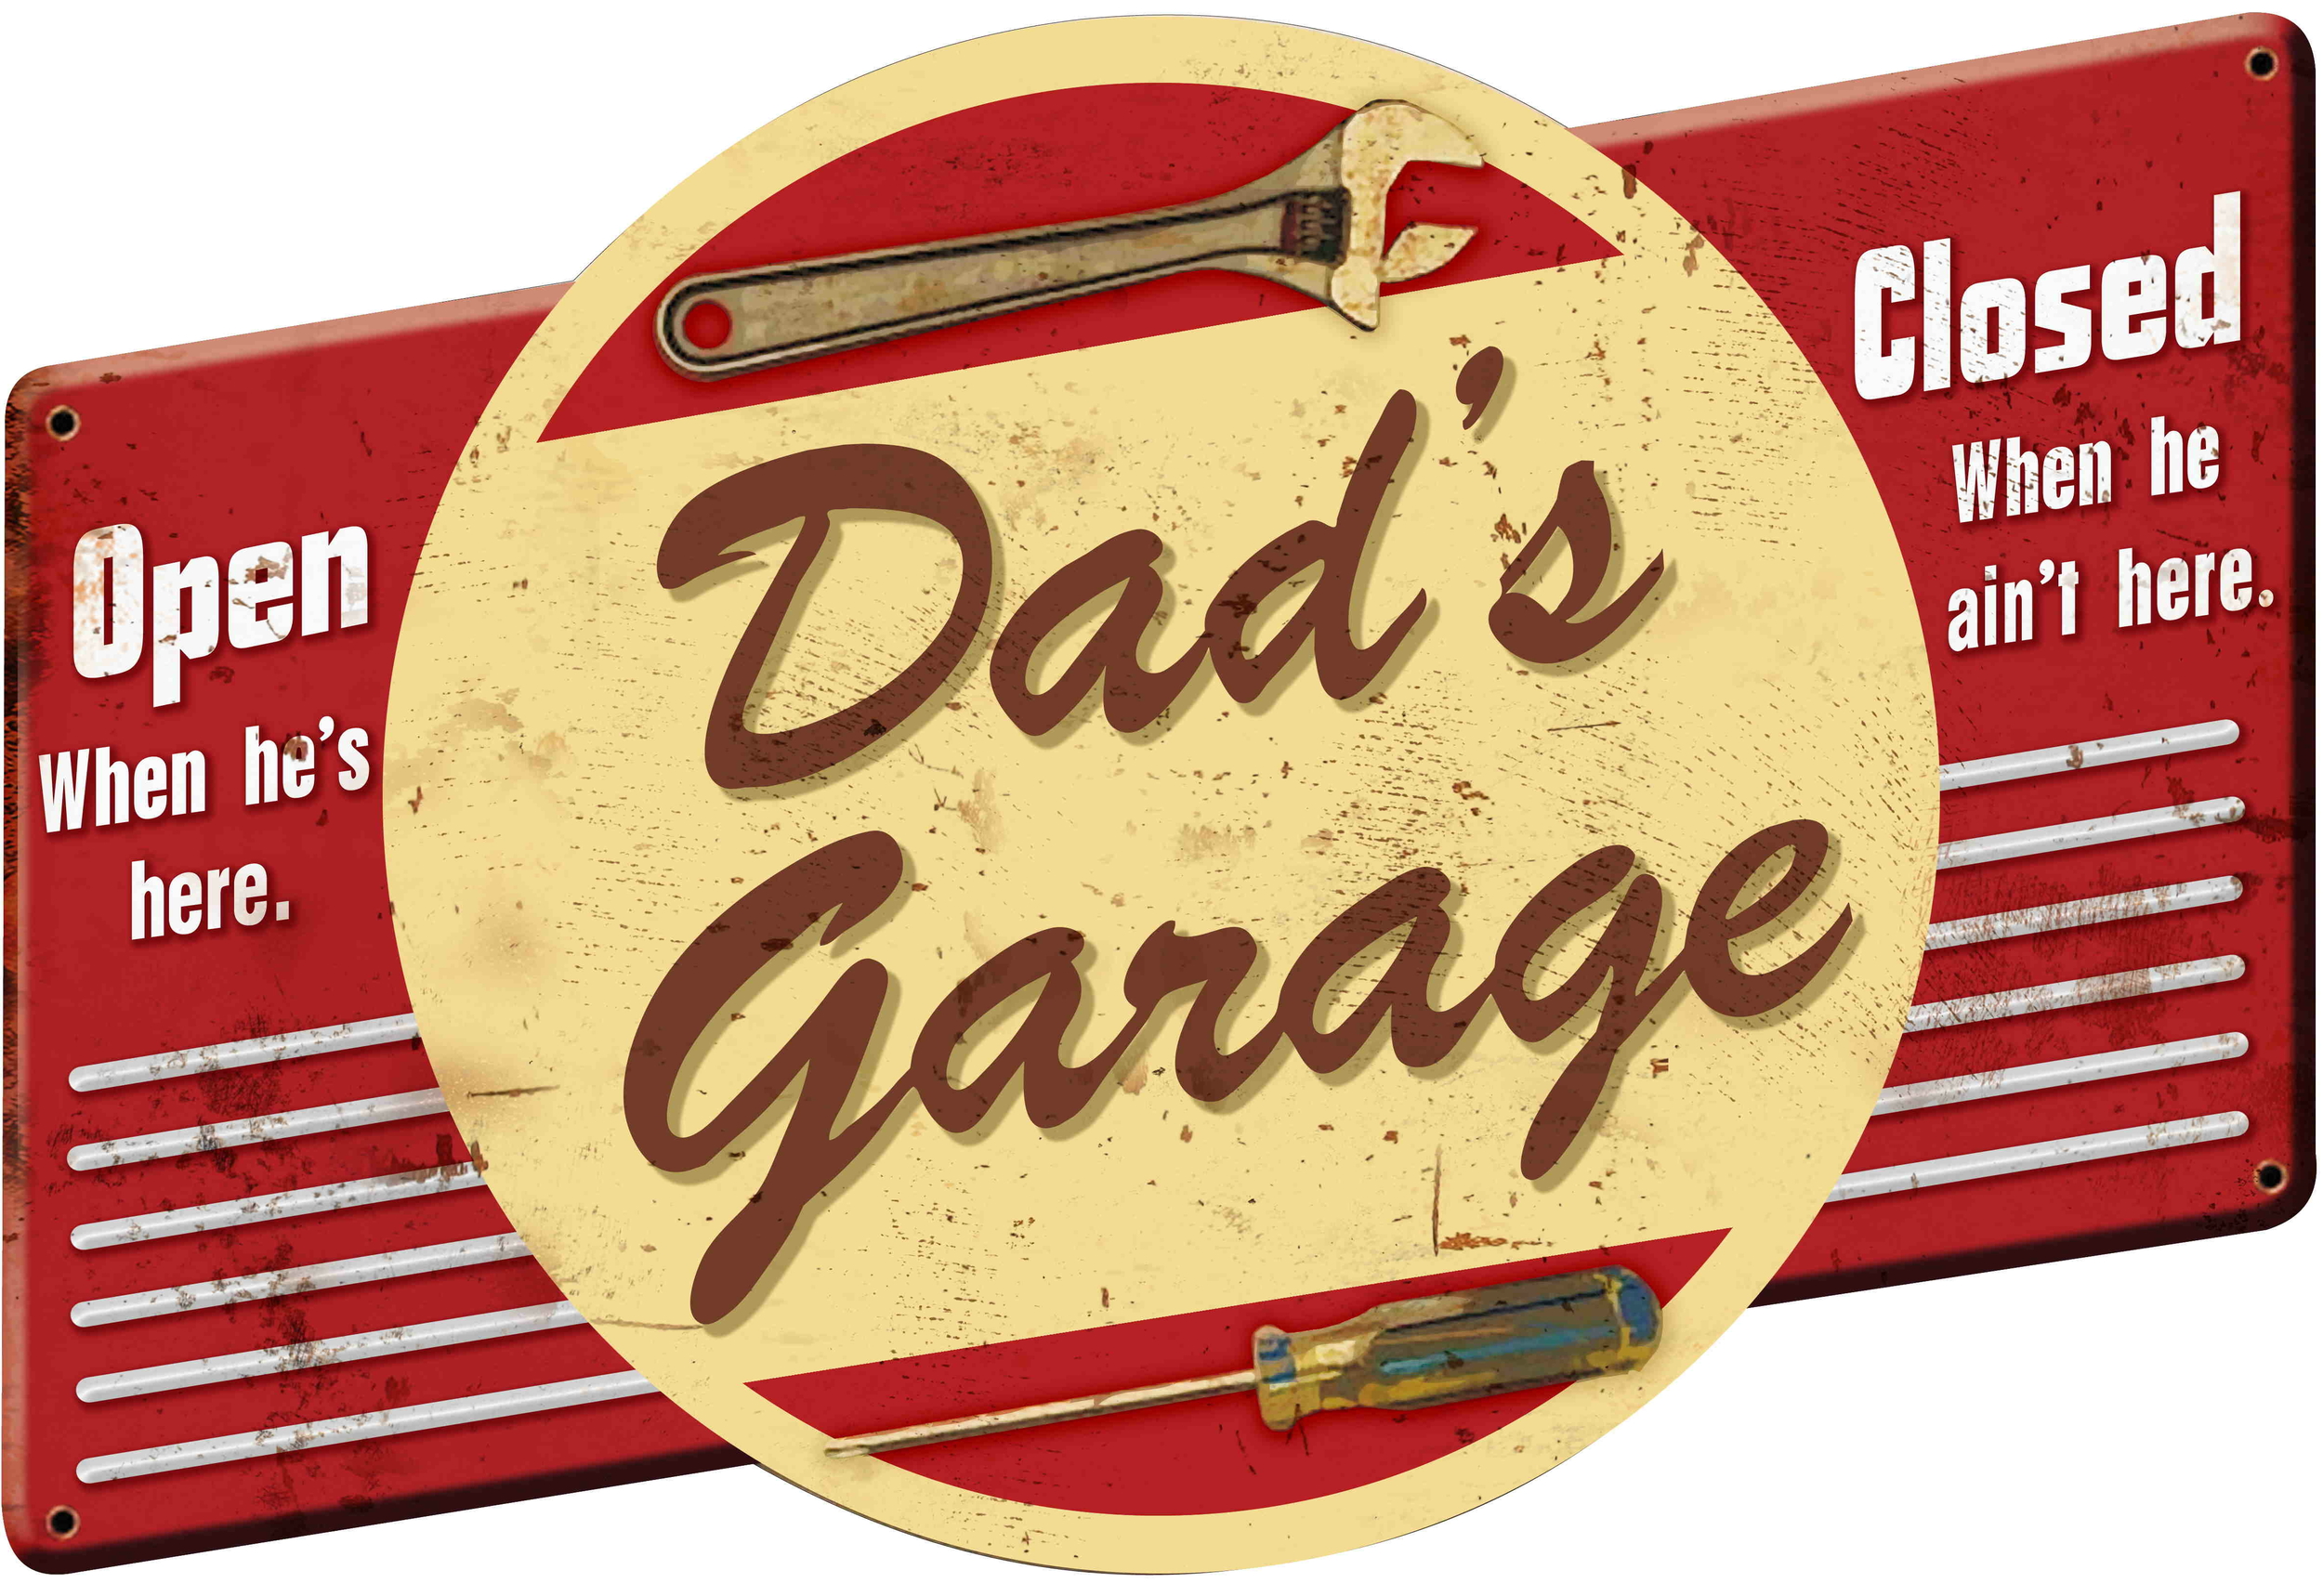 plaque déco vintage rétro dad's garage